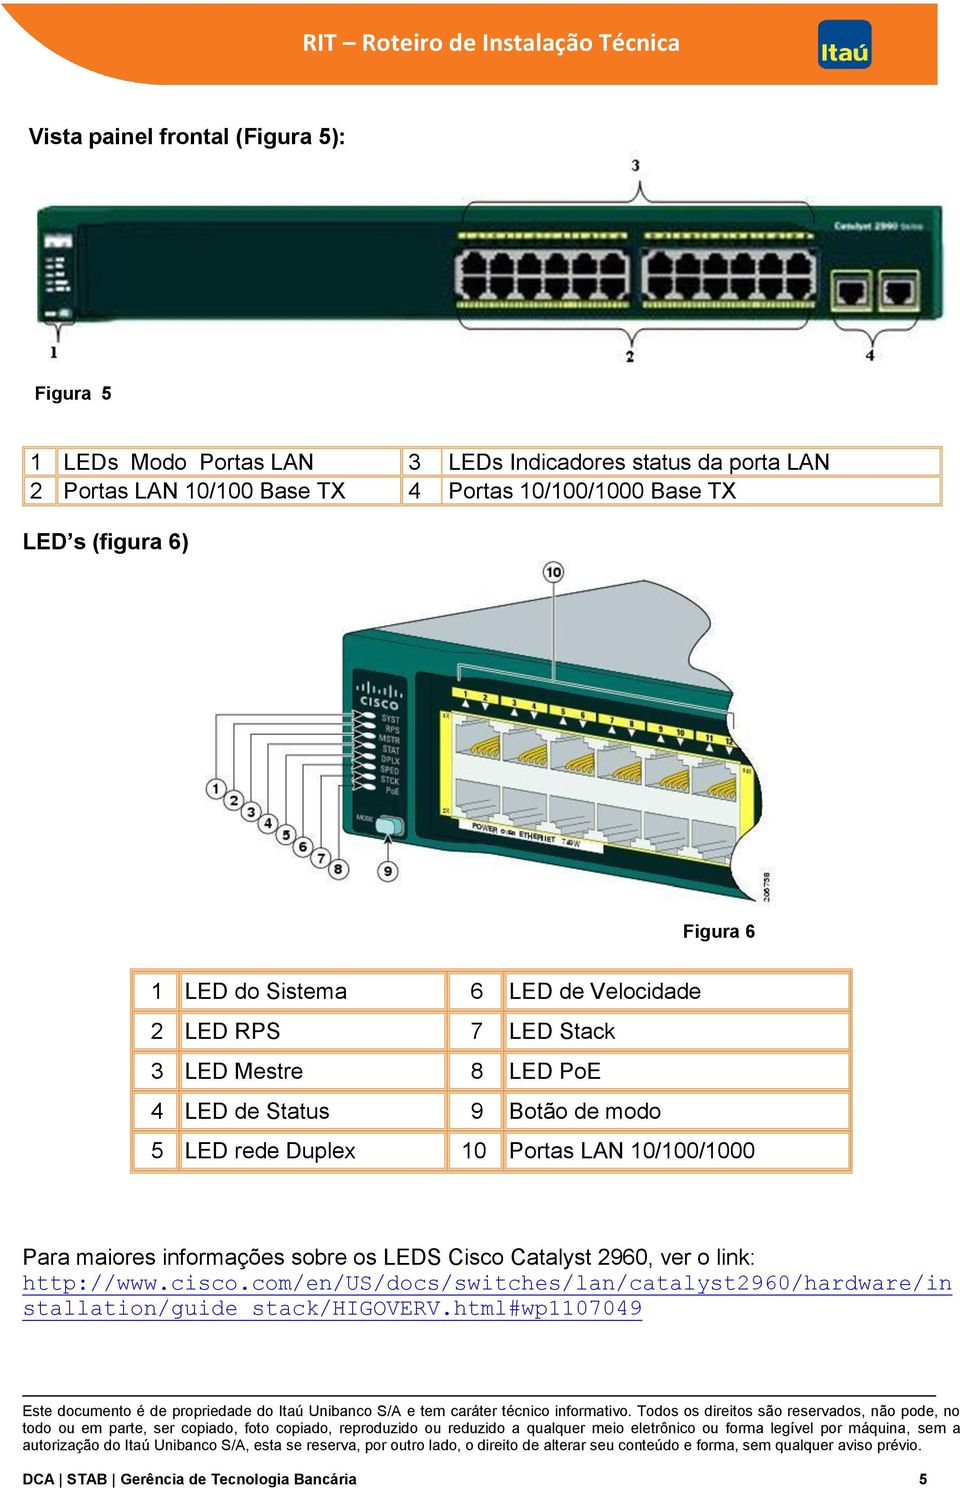 9 Botão de modo 5 LED rede Duplex 10 Portas LAN 10/100/1000 Para maiores informações sobre os LEDS Cisco Catalyst 2960, ver o link: http://www.